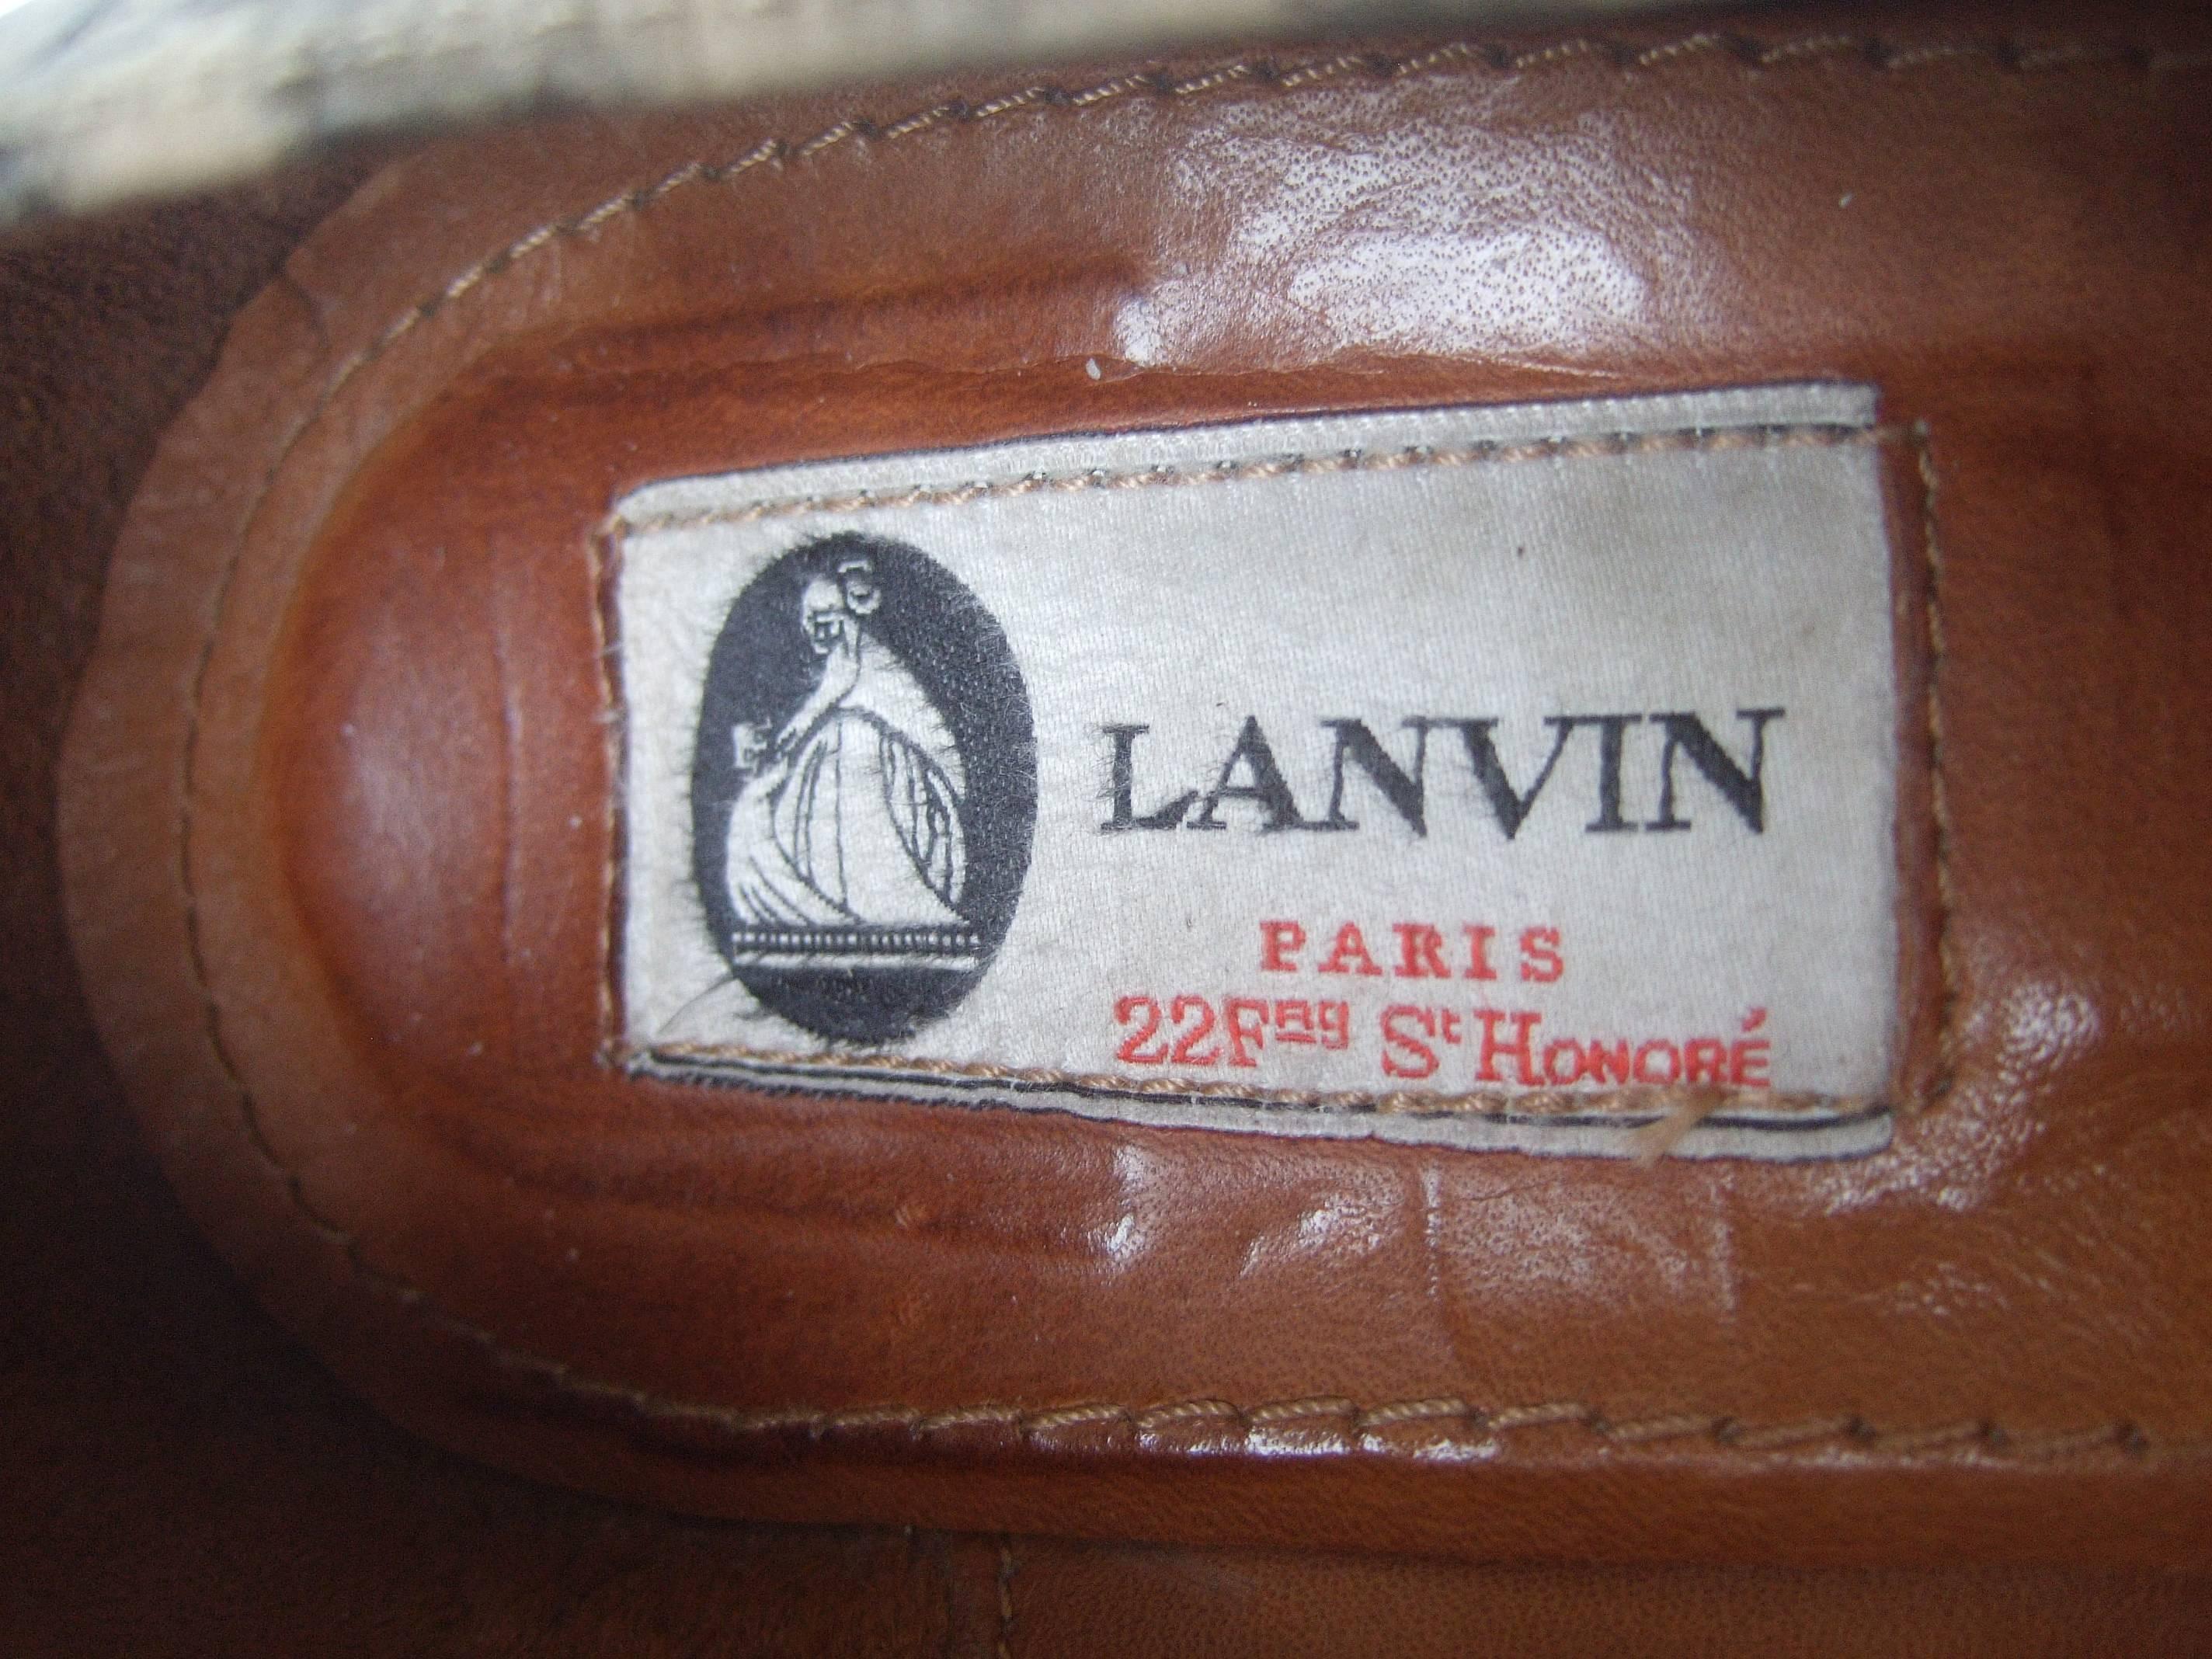 Lanvin Paris Animal Print Leather Wedges ca 1970s US Size 7  1